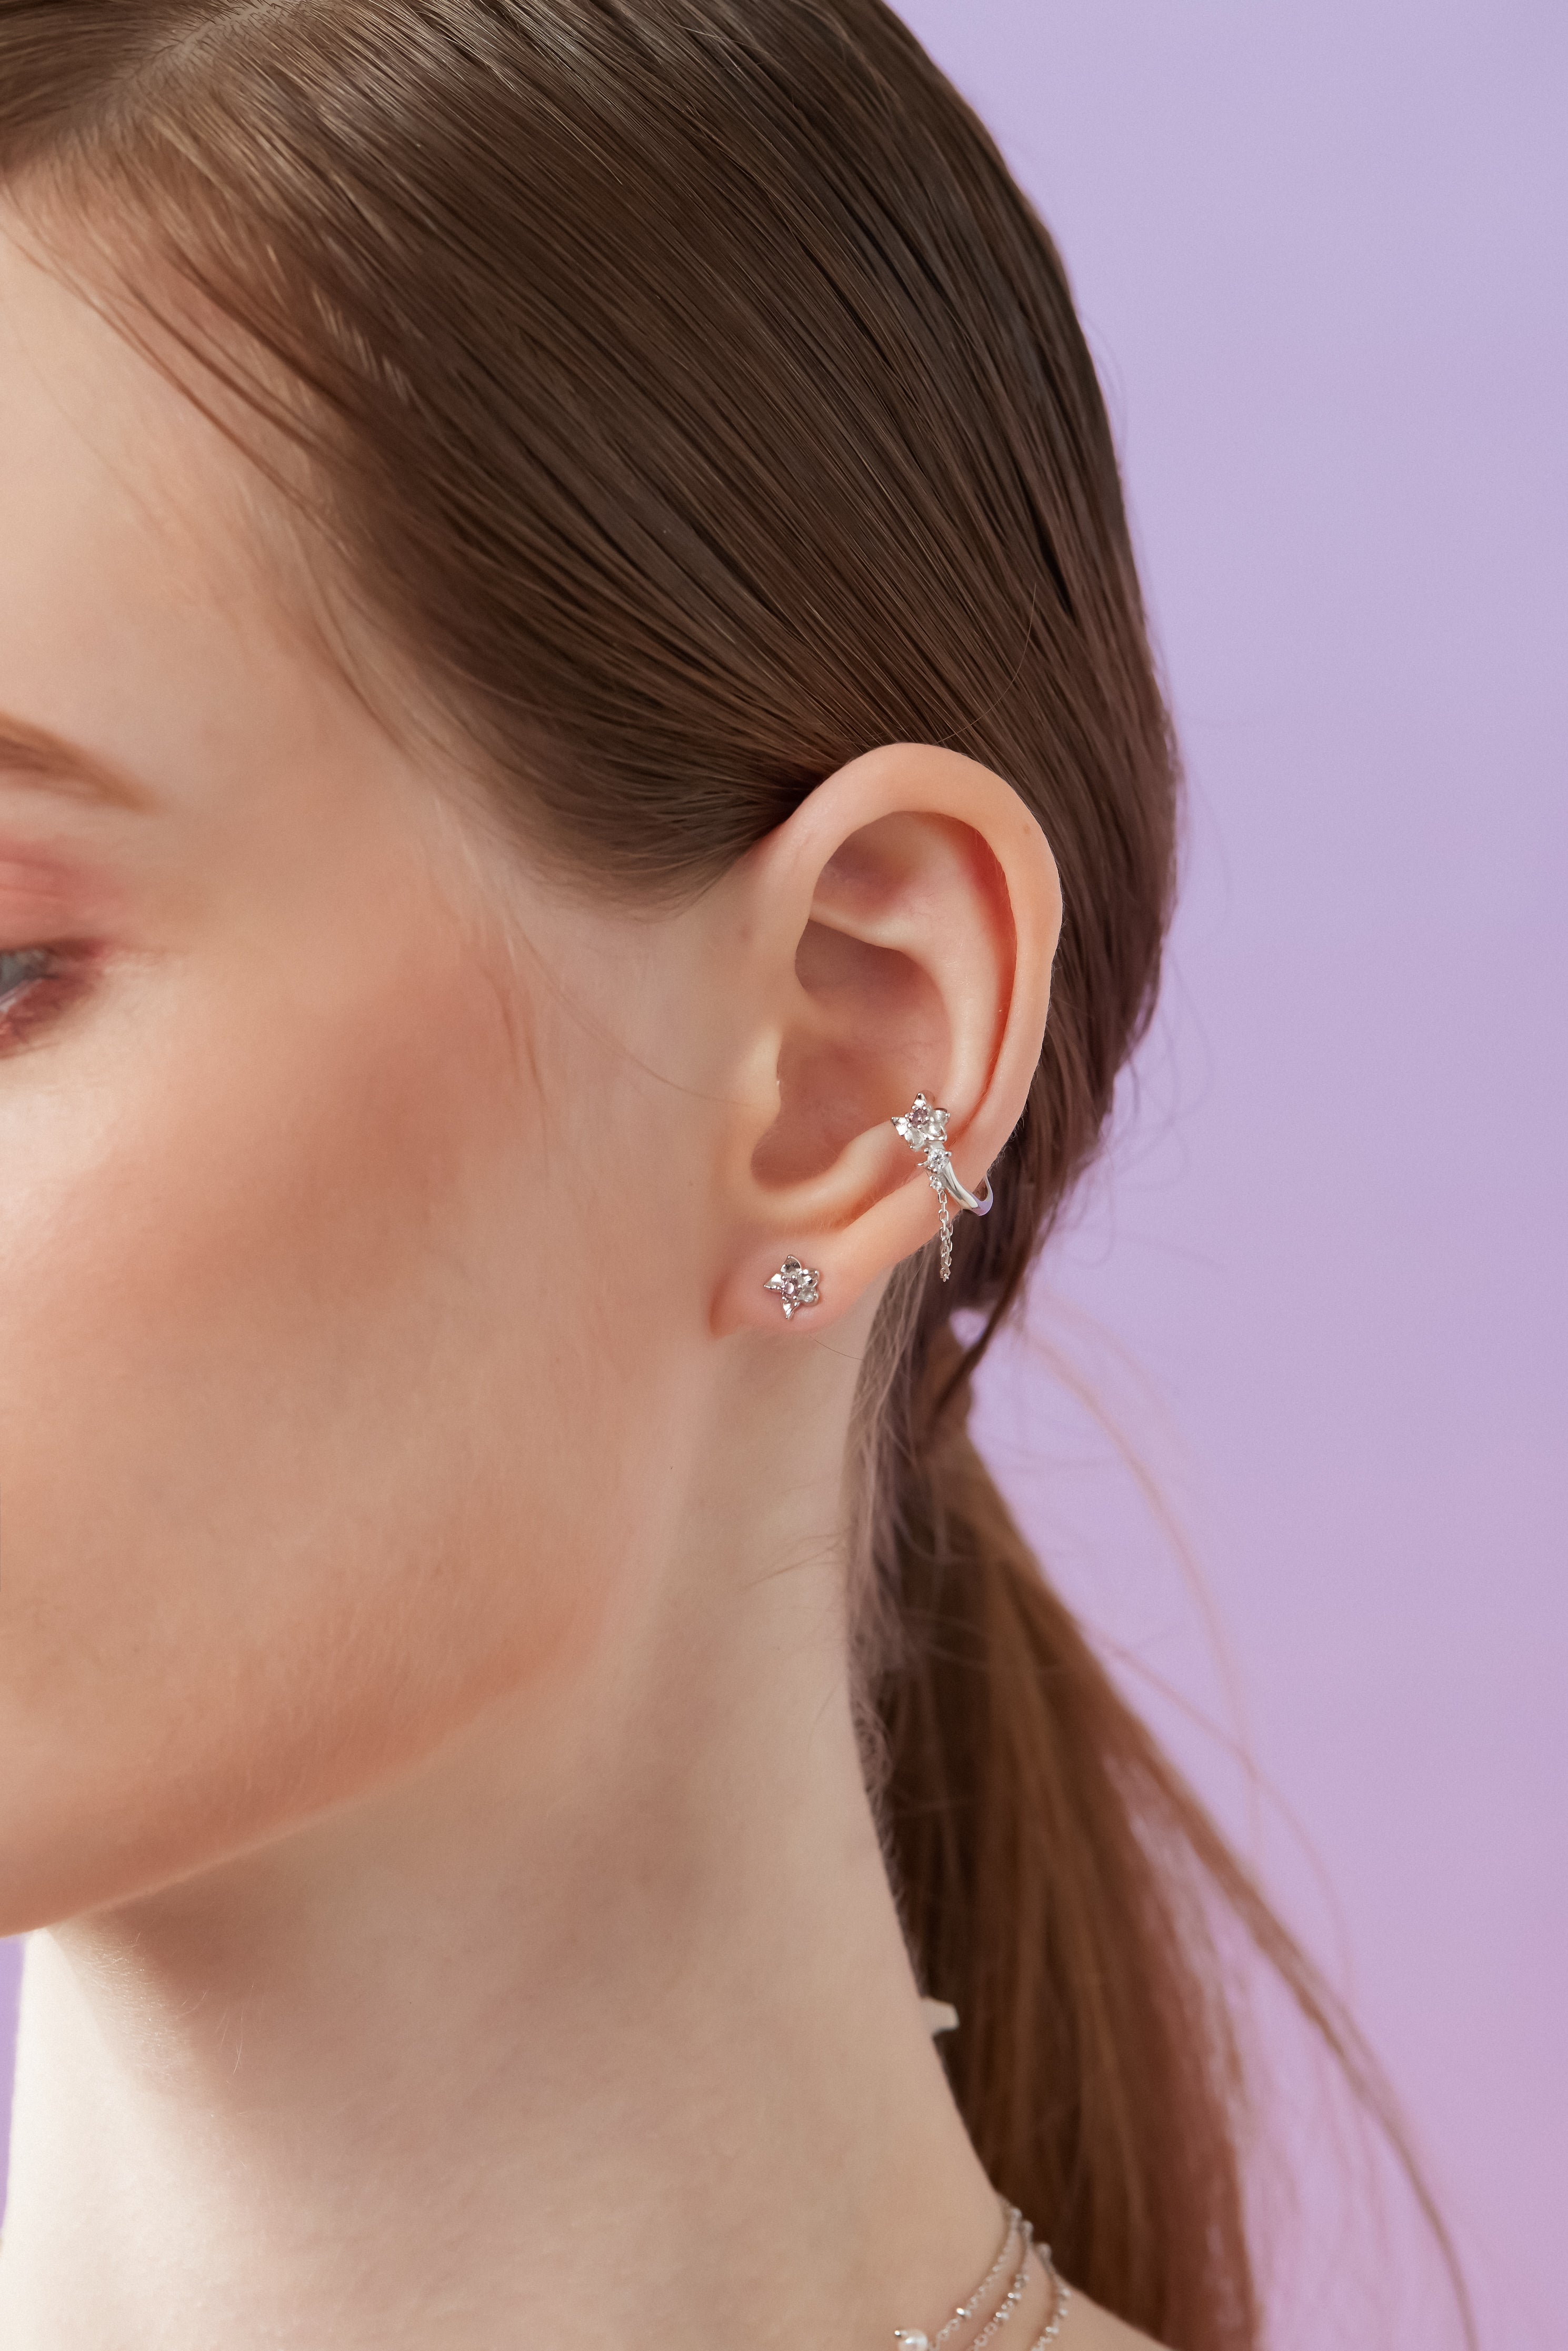 Floral Silver Chain Ear Cuff - Iris | LOVE BY THE MOON